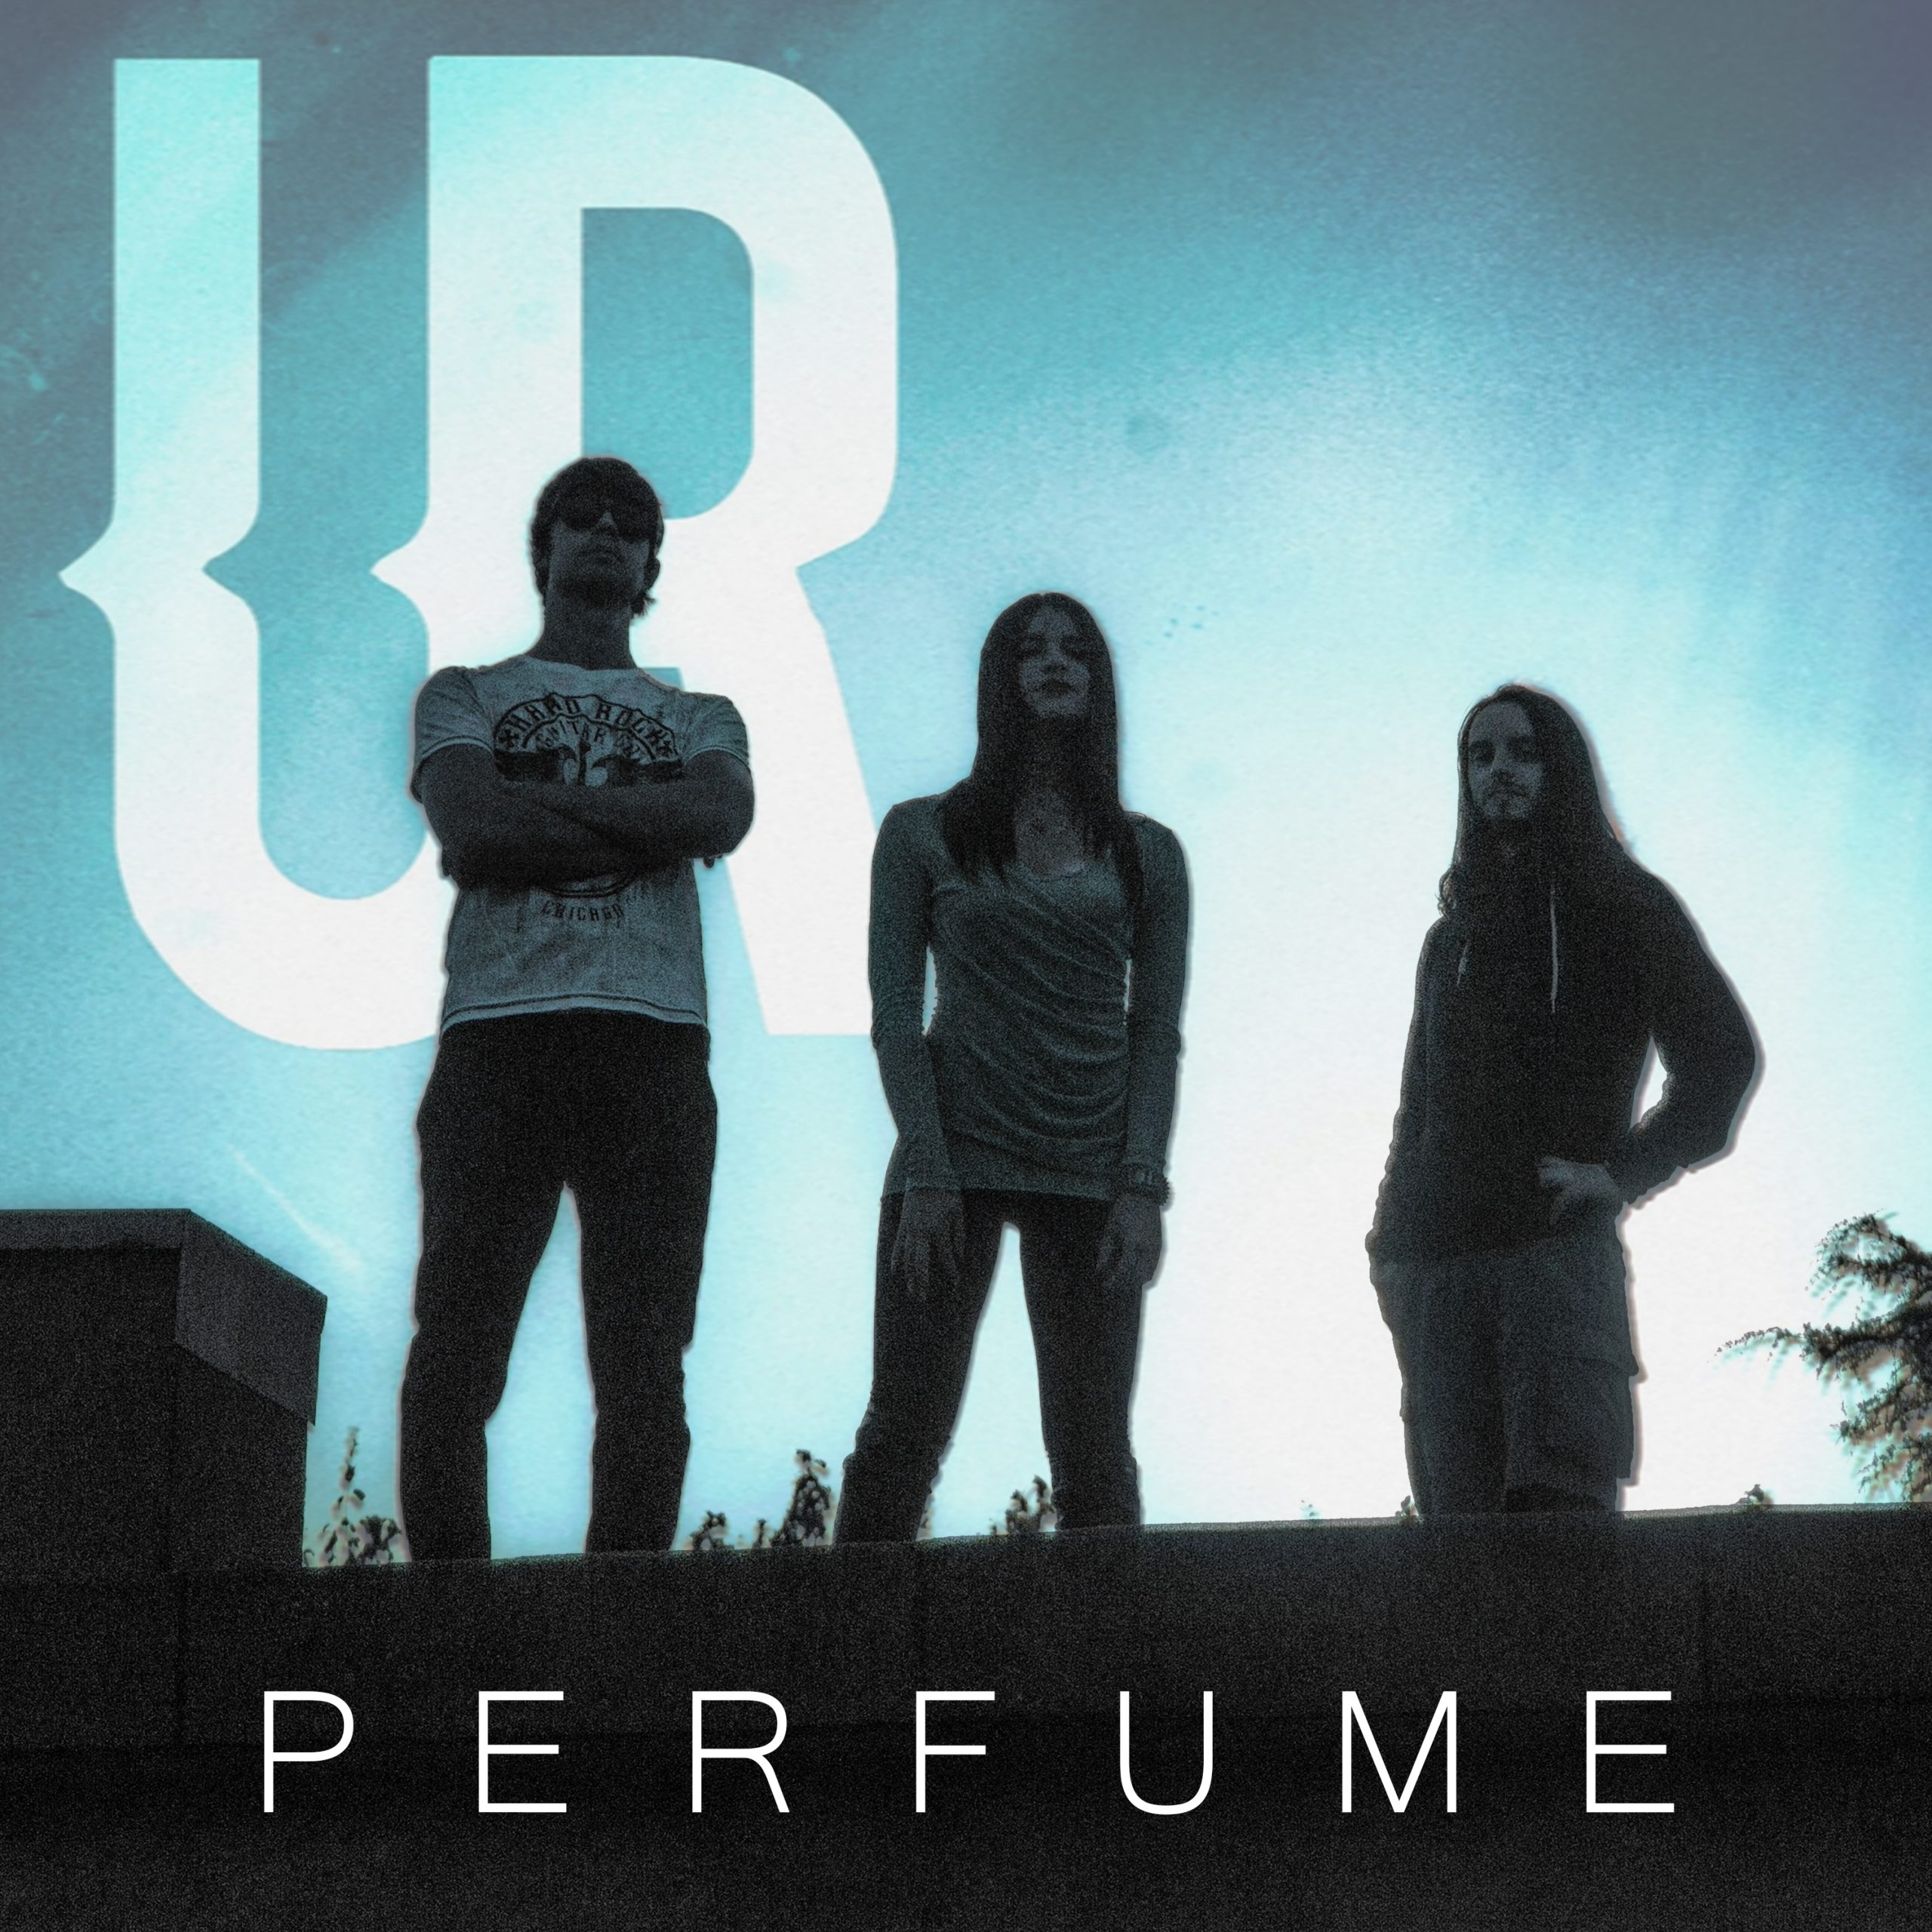 Esce “Perfume”, il nuovo singolo di Undefined Reference su tutte le piattaforme digitali